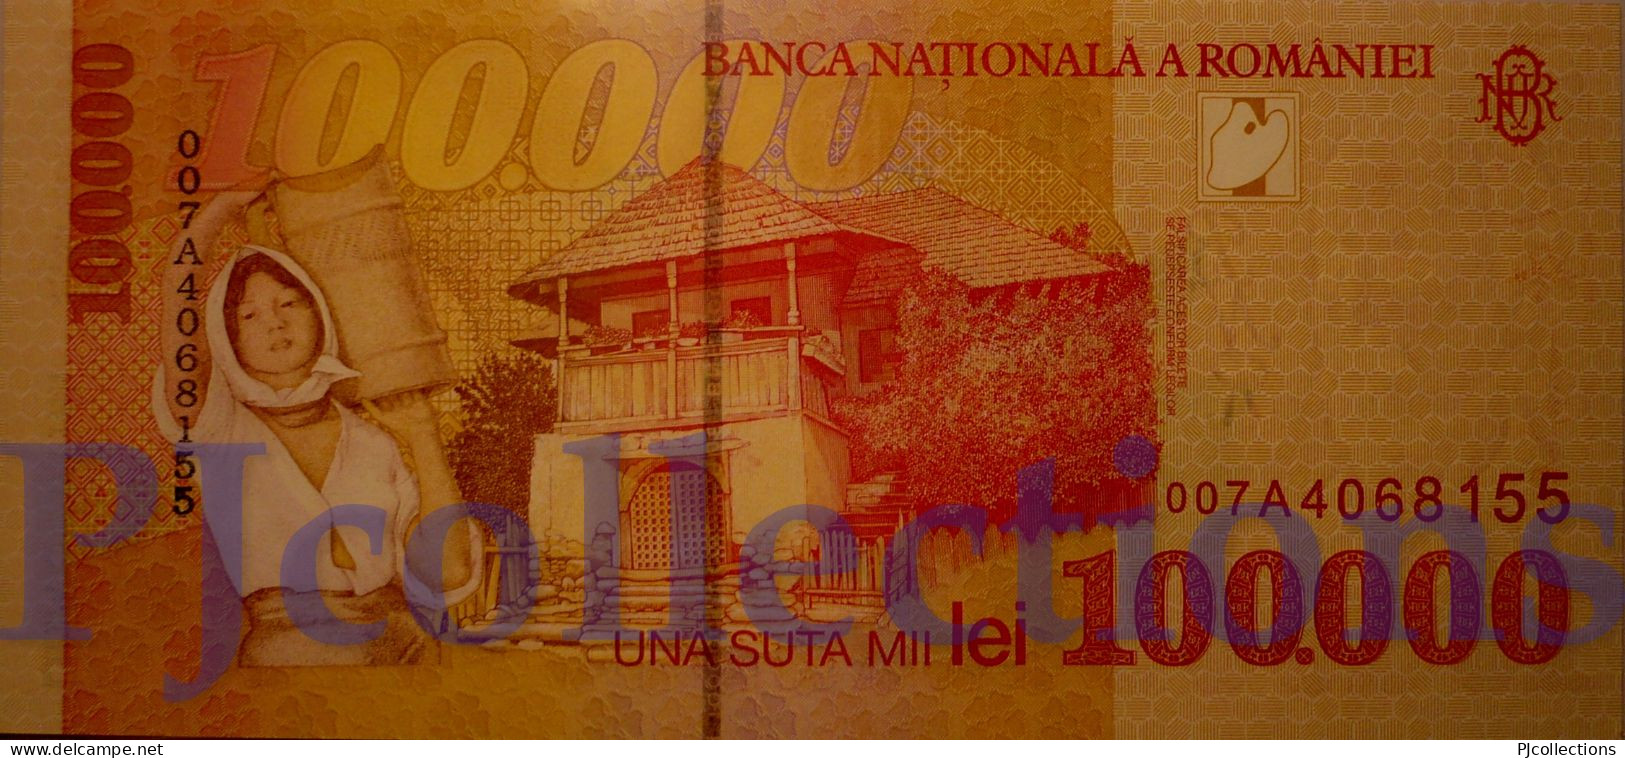 ROMANIA 100000 LEI 1998 PICK 110 UNC - Romania